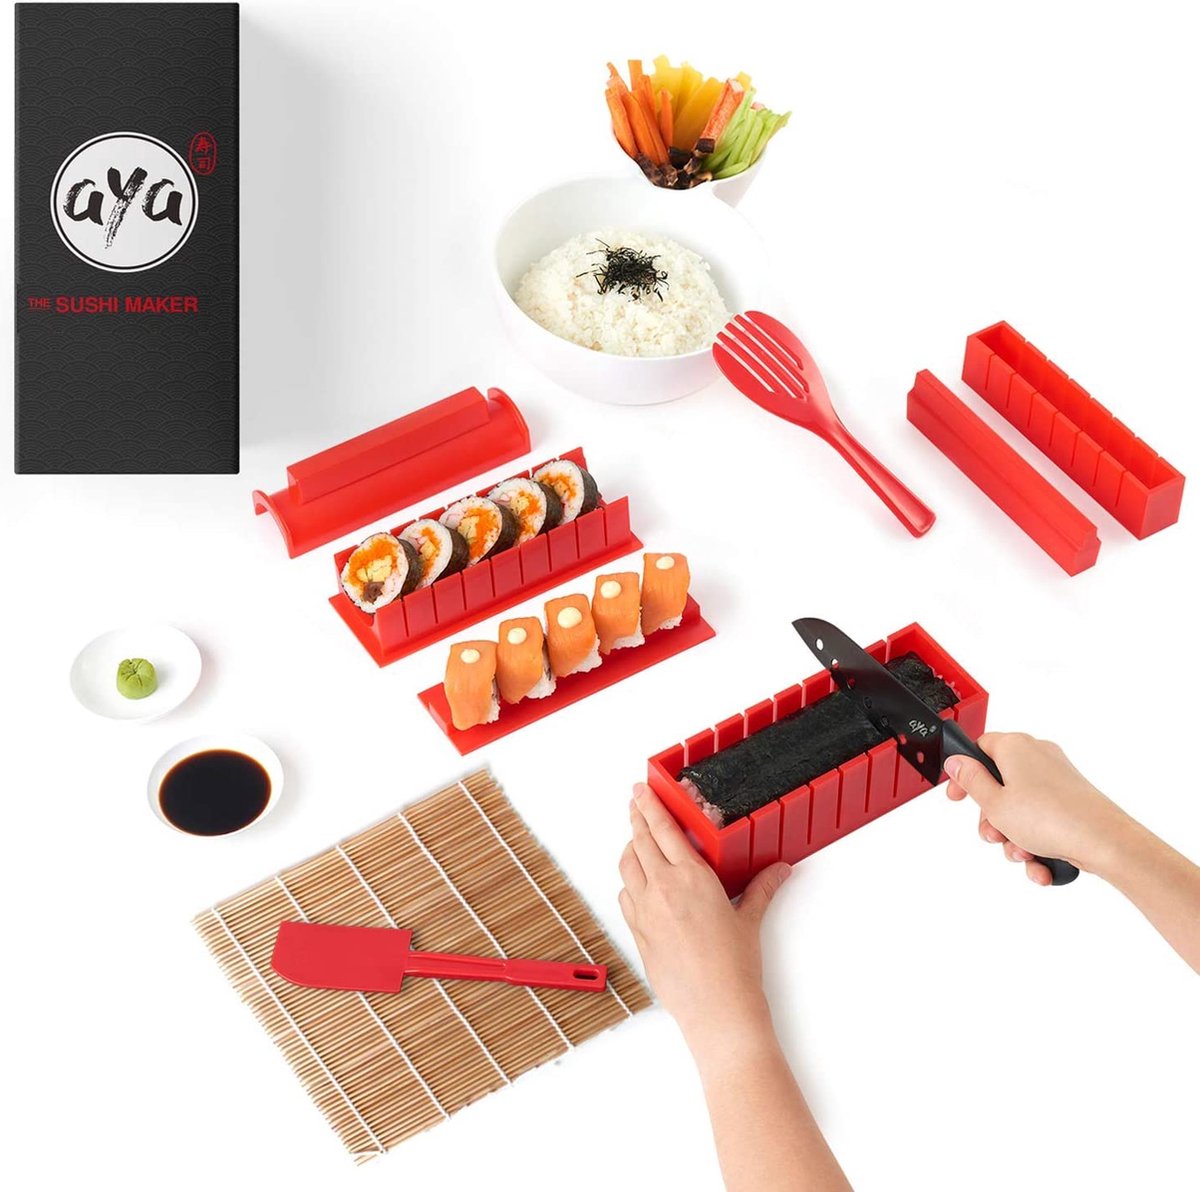 AYA Sushi Maker Kit Sushi Maker Rood Compleet met Sushi messen en exclusieve video tutorials 11 stuks DIY sushi set - Eenvoudig en leuk voor beginners - Sushi Roller Maki Roll - Sushi Roller